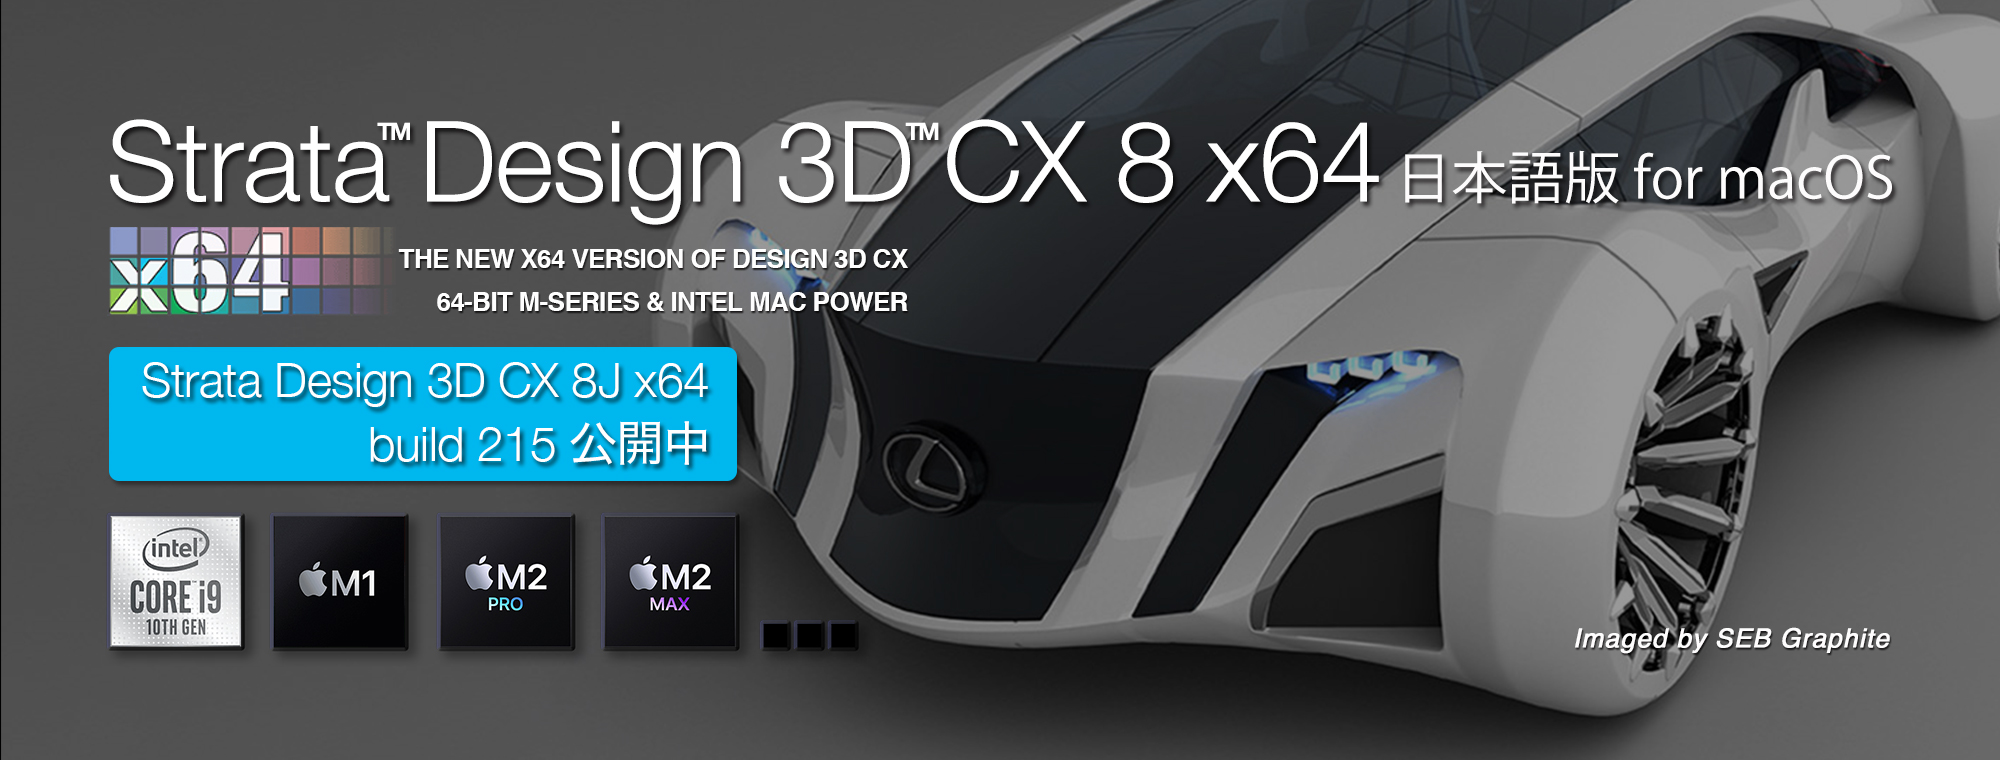 Strata Design 3D CX 8J x64